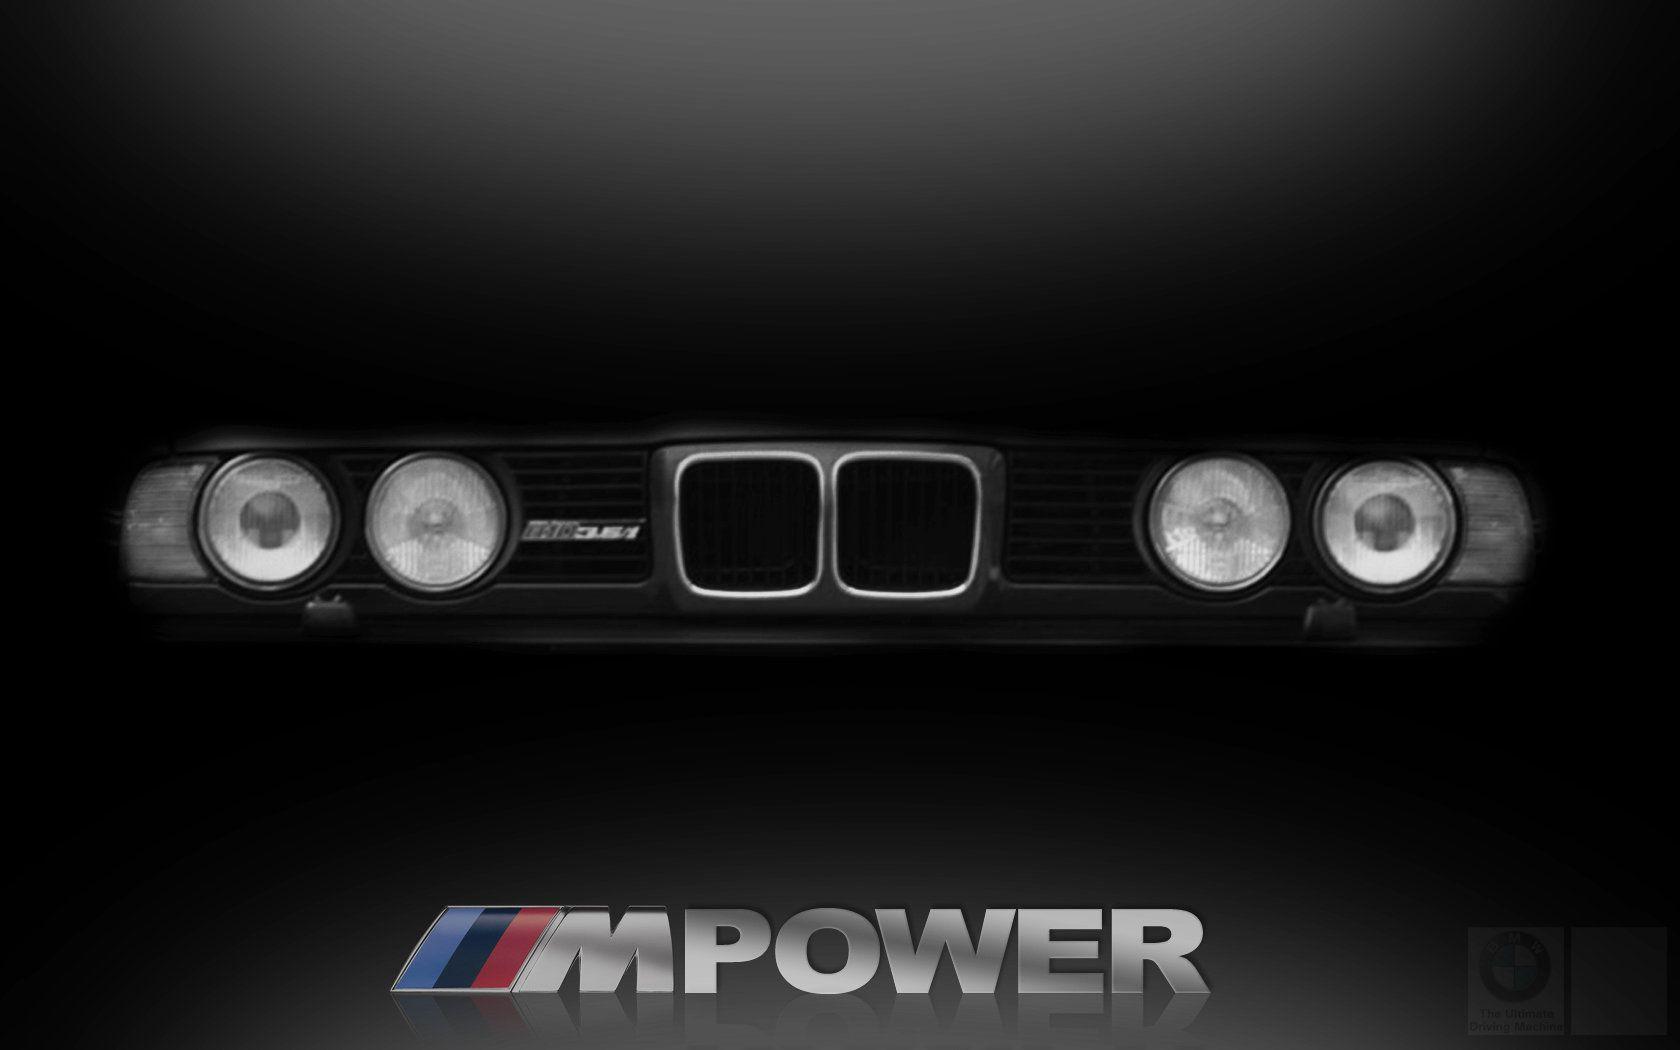 BMW MPower by rubasu